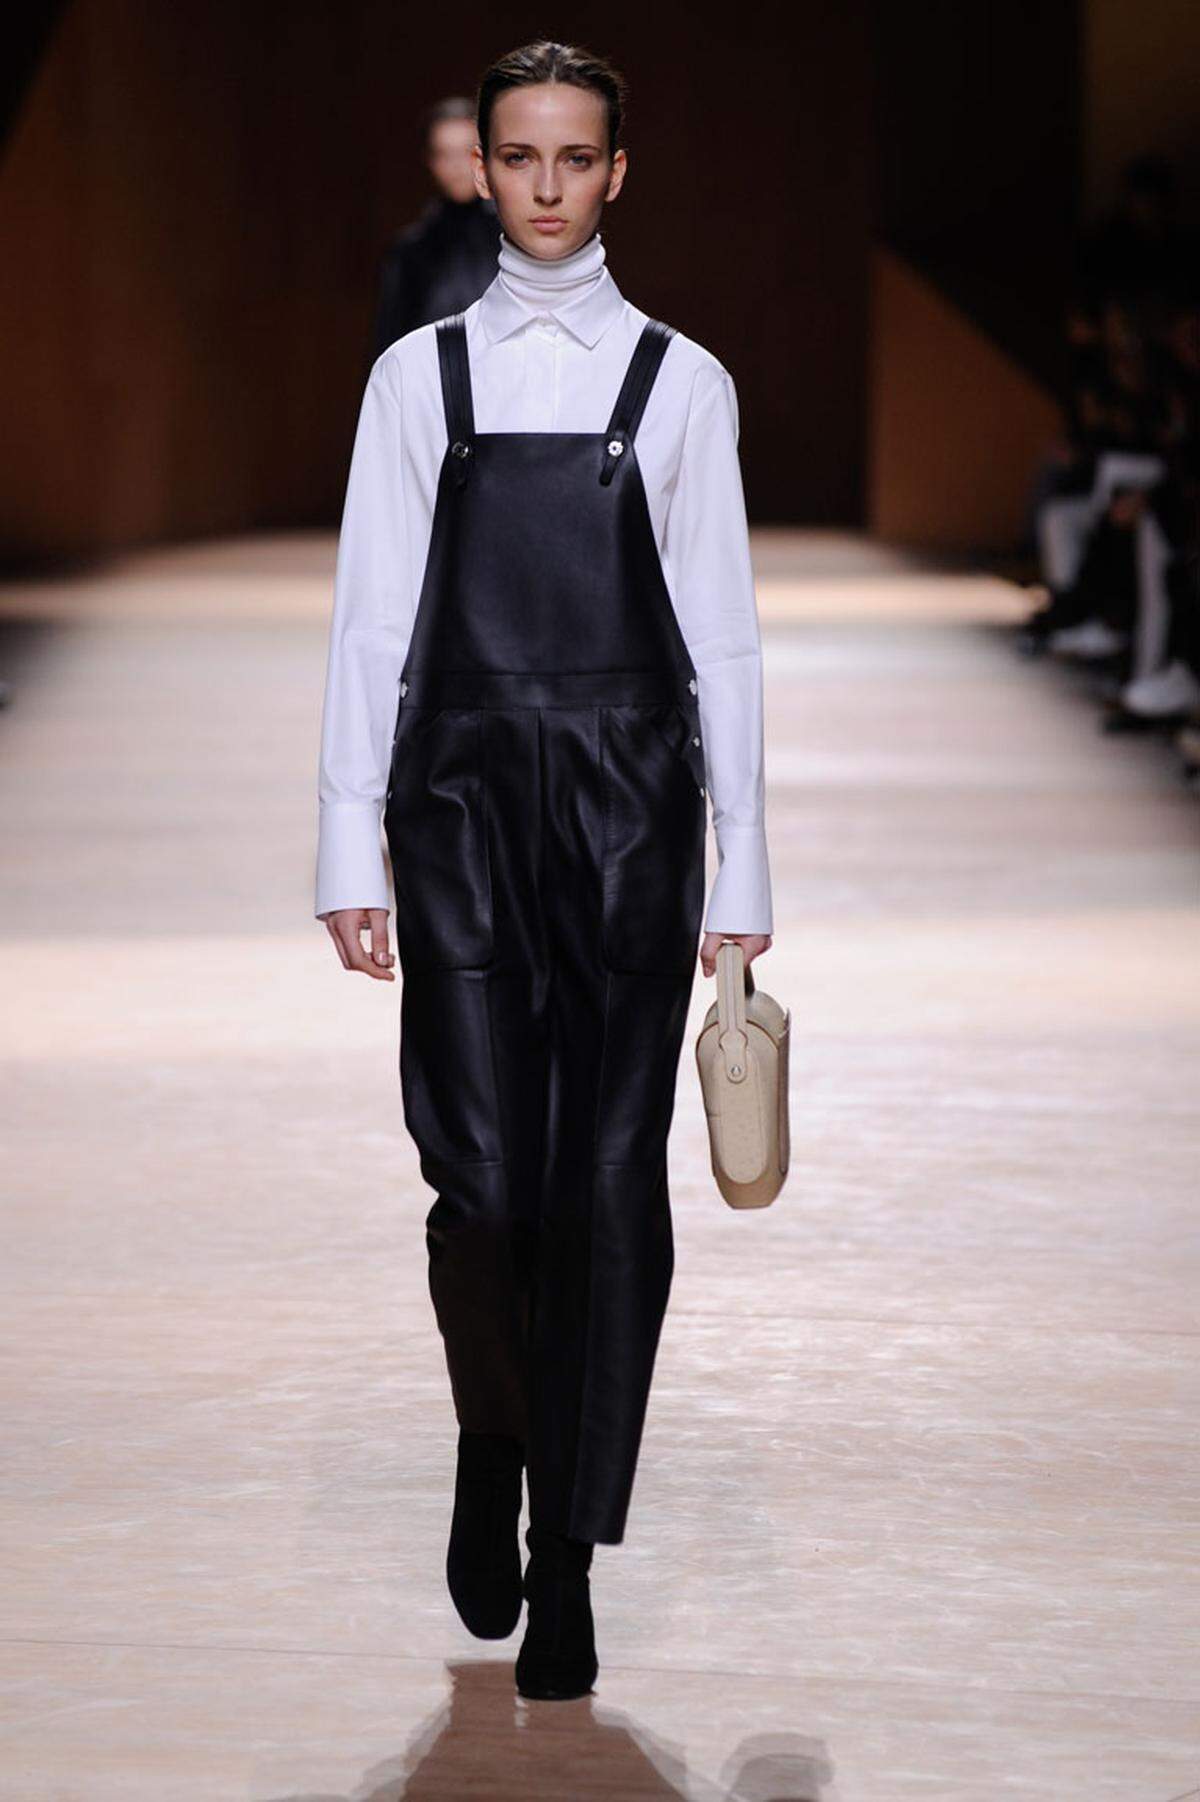 Unter der Bluse noch ein Rollkragenpullover. Hermès hat das passende Outfit für all jene, denen immer kalt ist.